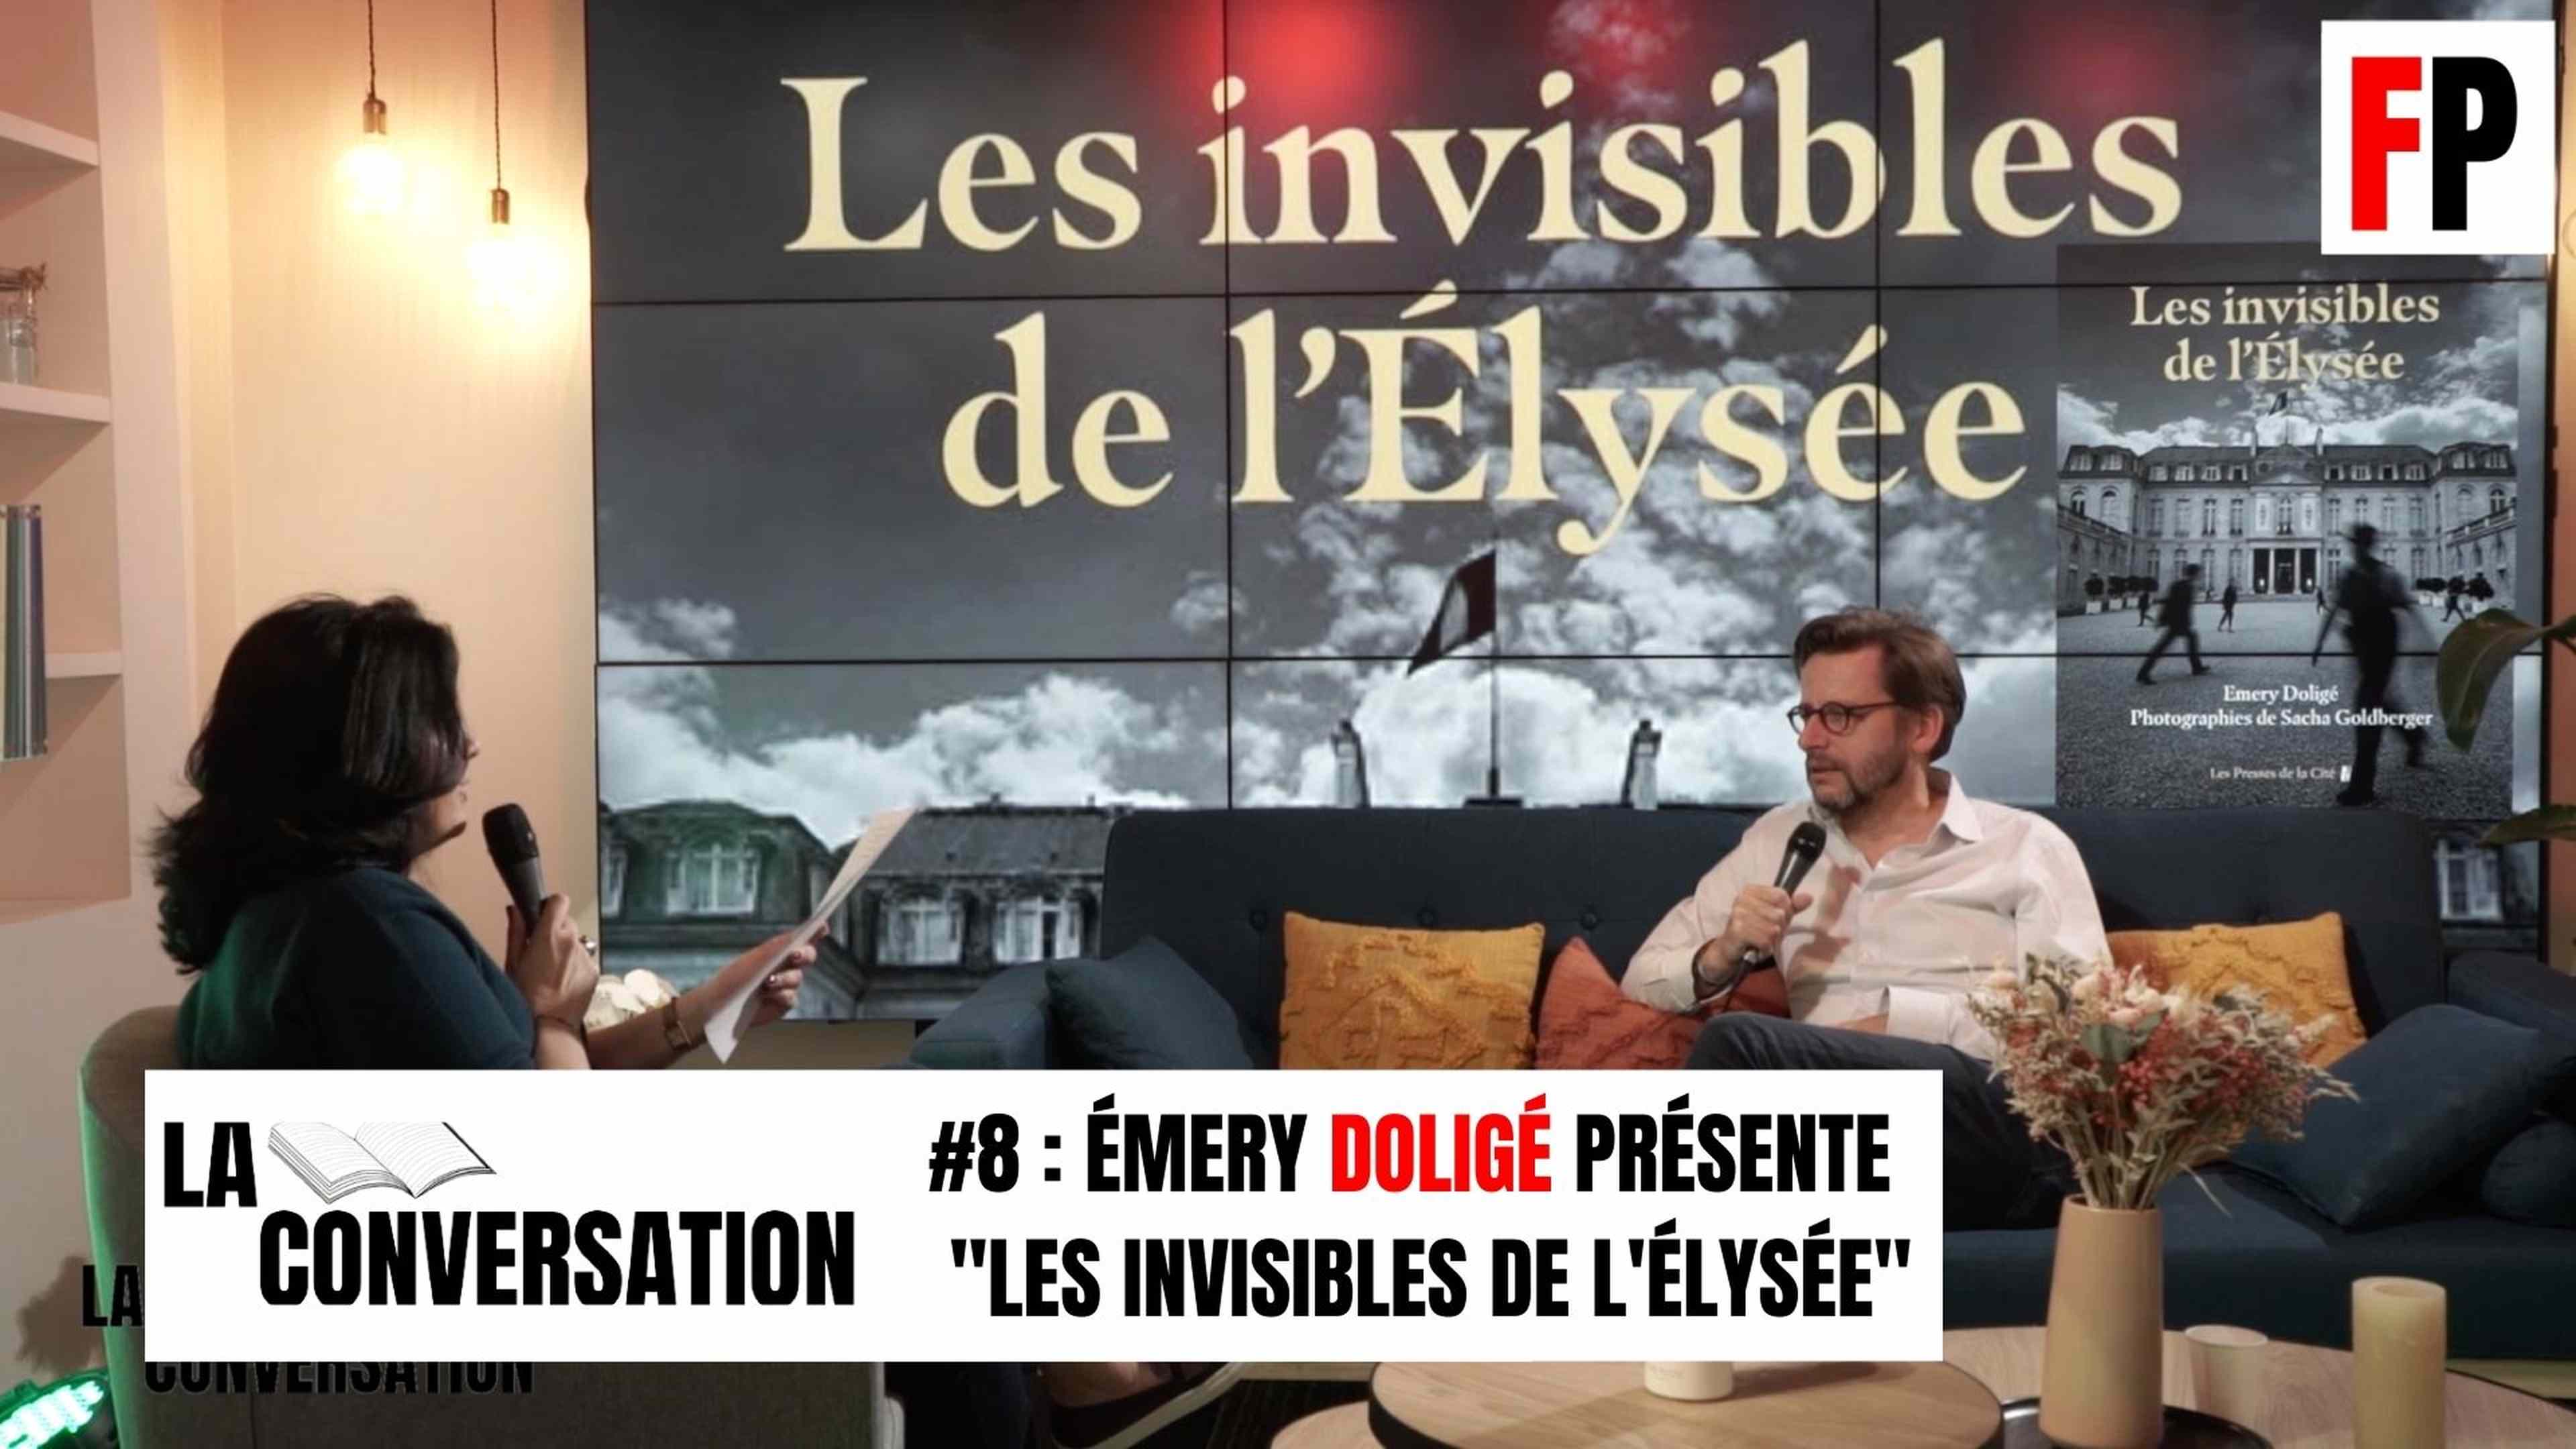 La conversation #8 : Émery Doligé présente "Les invisibles de l'Élysée"